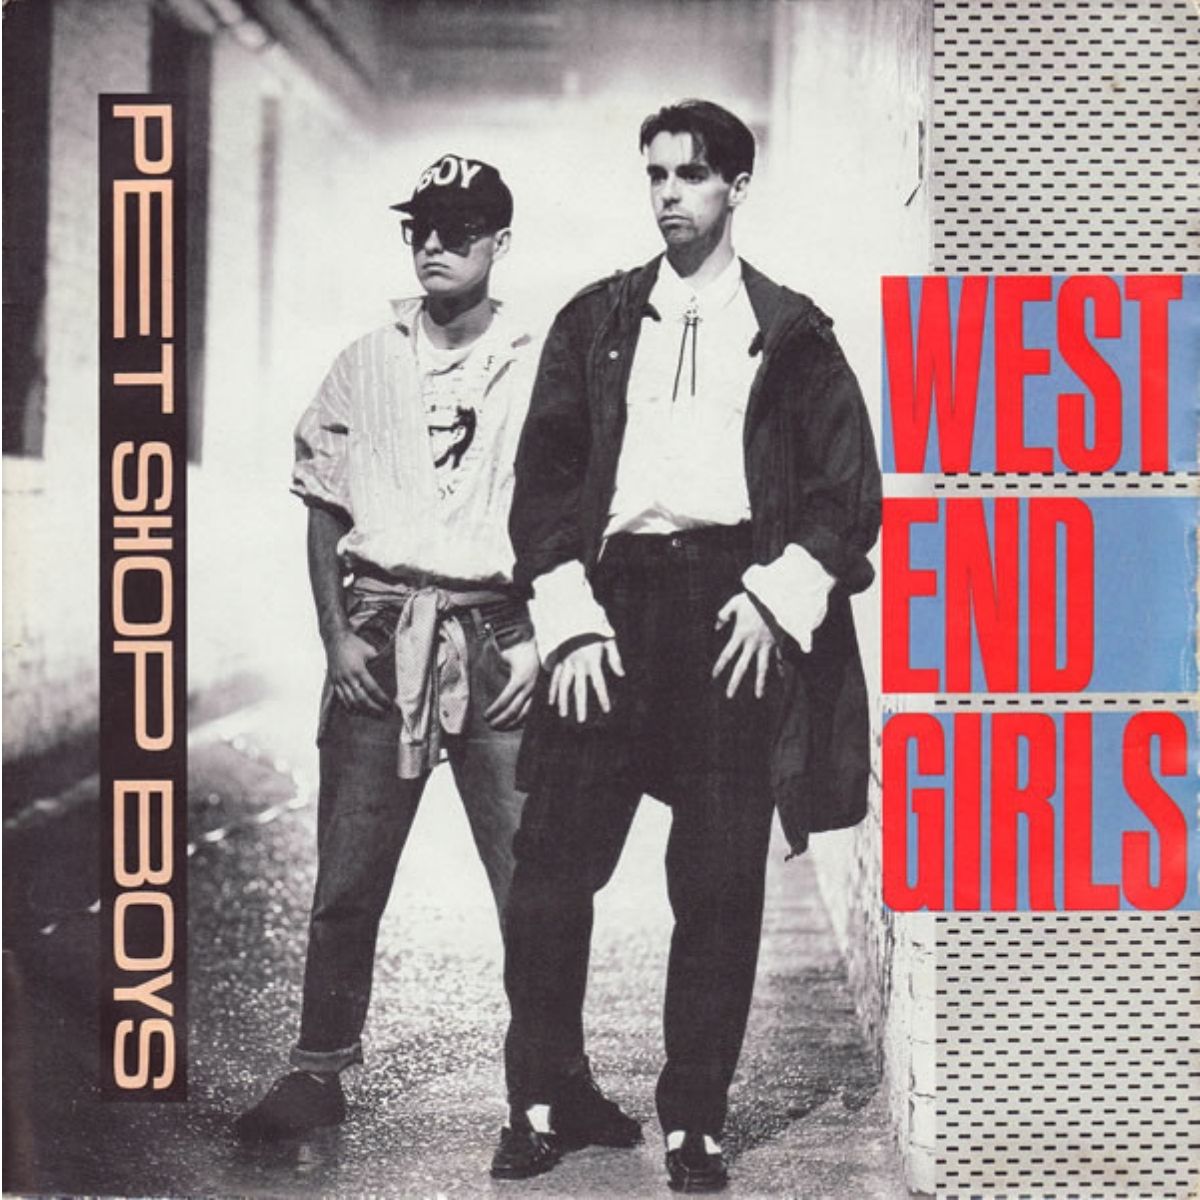 Arte de capa para "West End Girls" single pelos meninos da Pet Shop